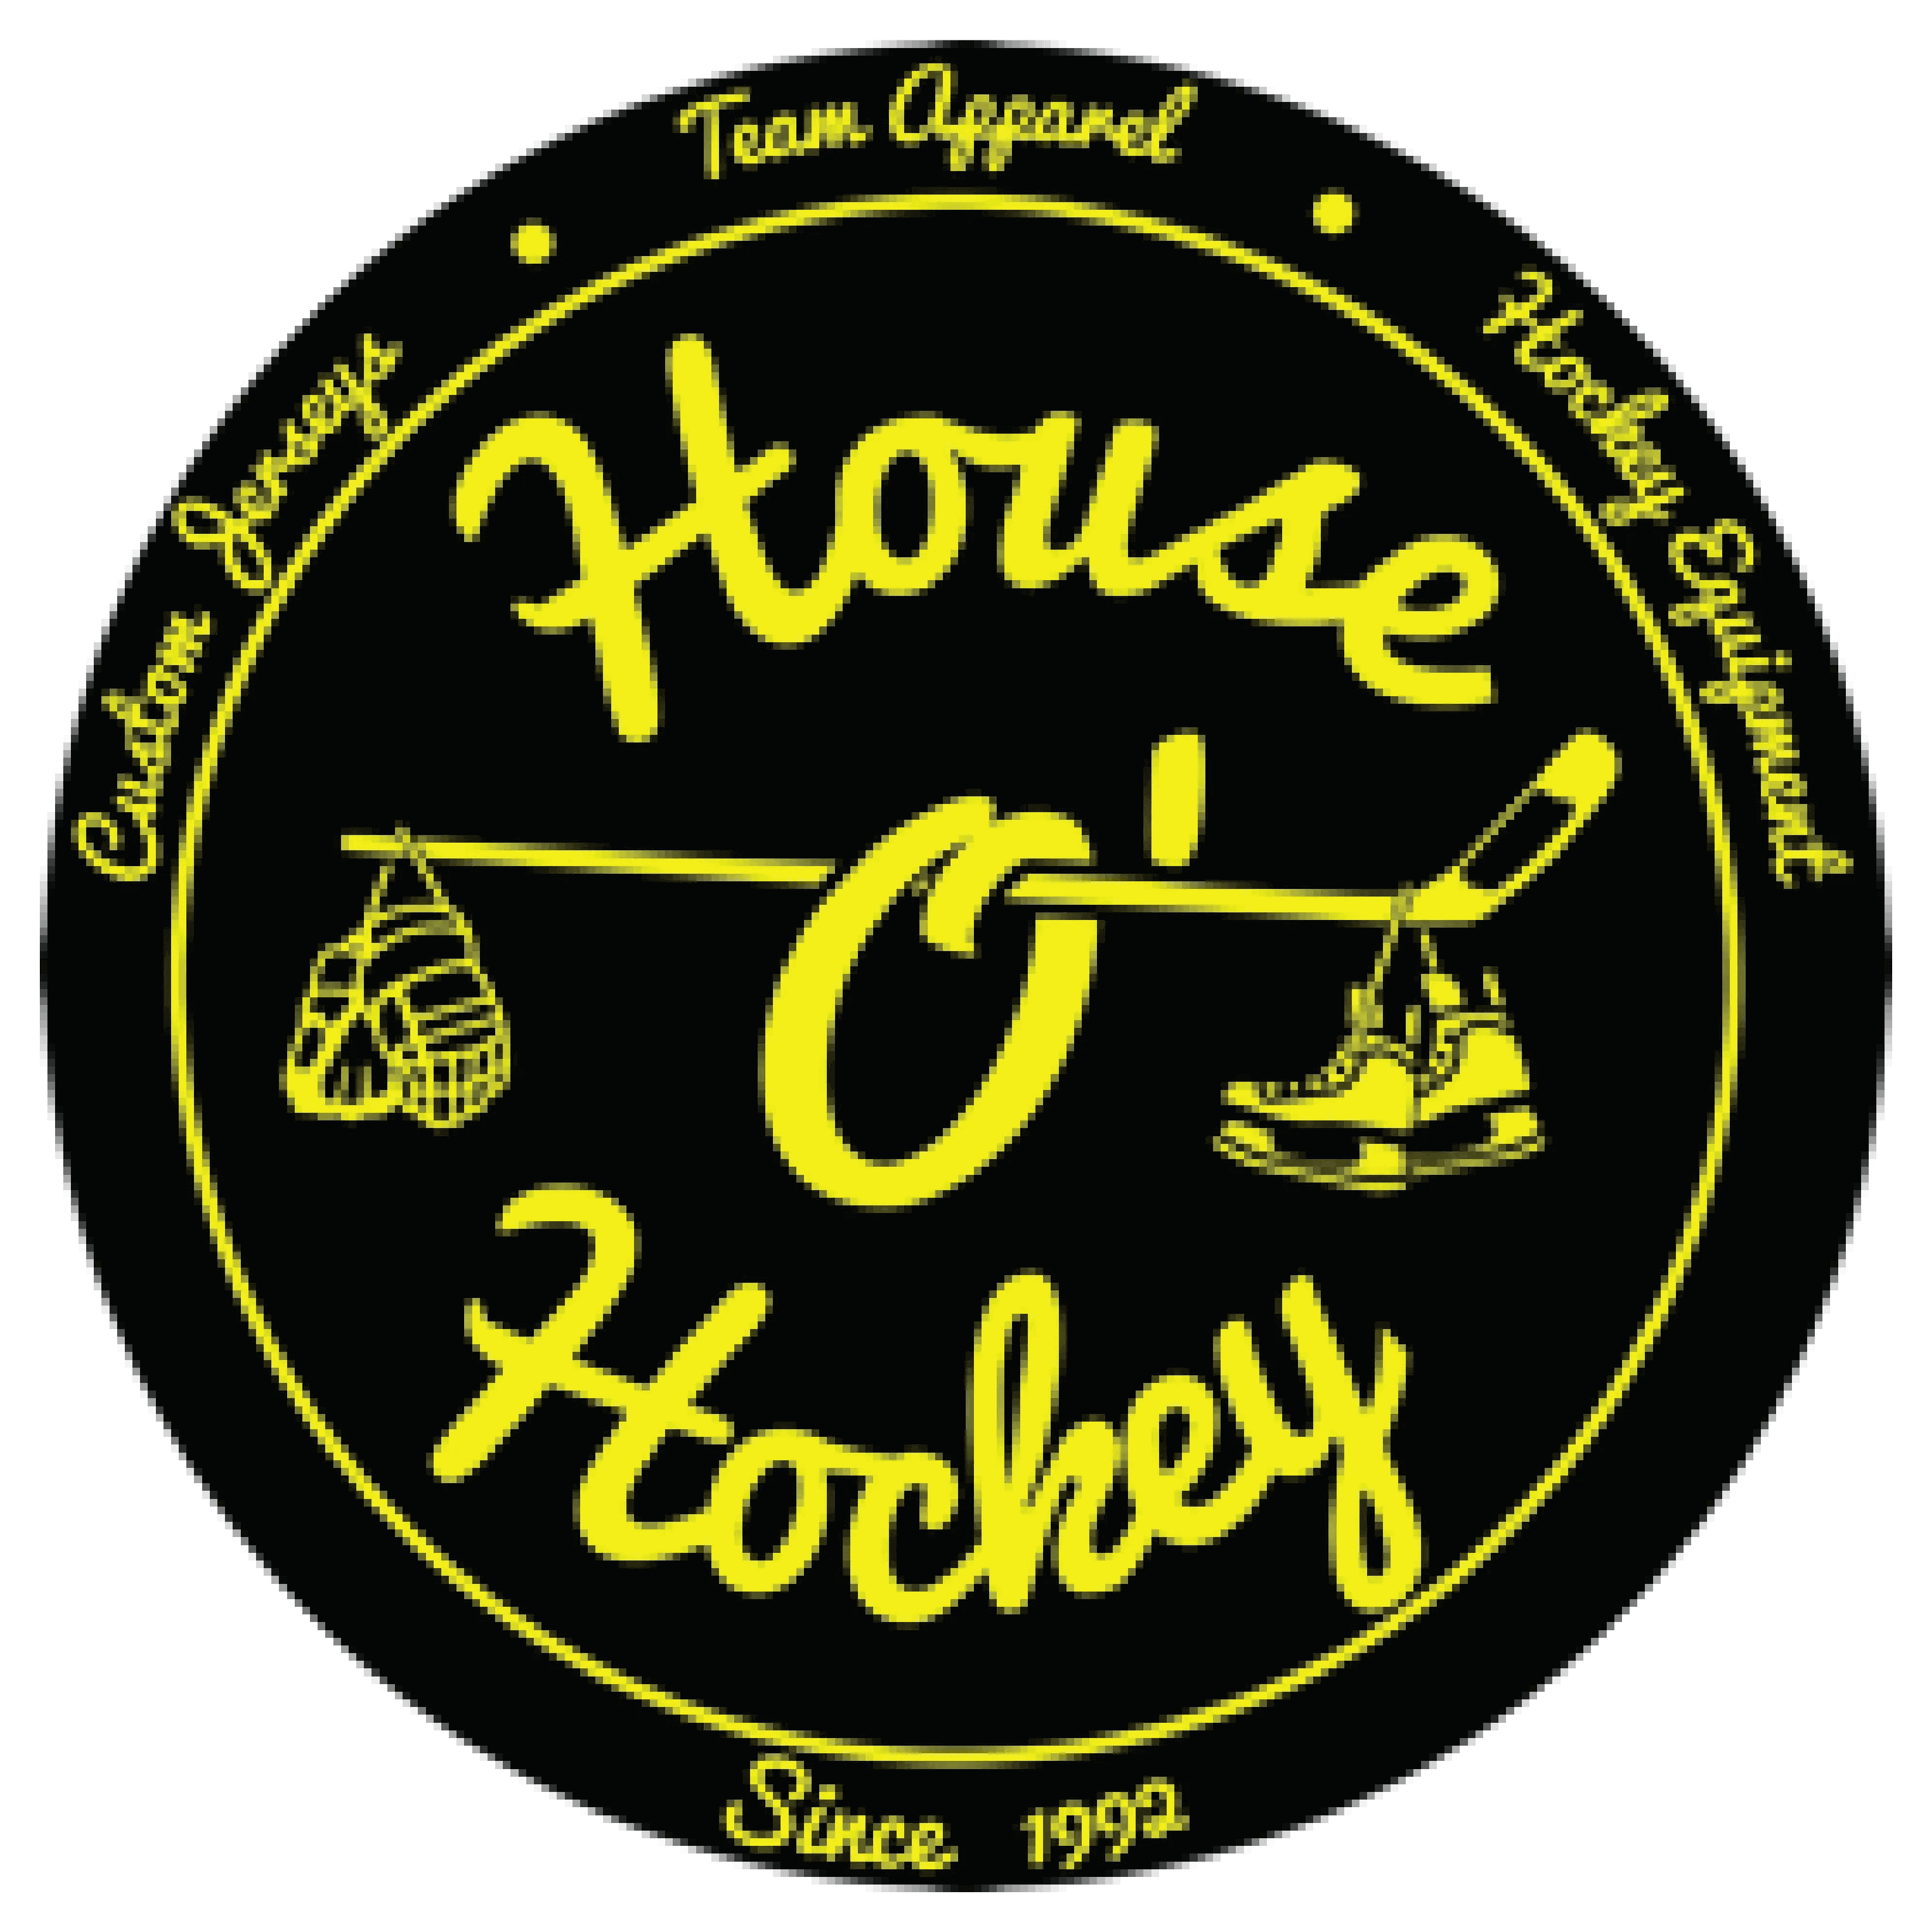 Hou O' Hockey logo that looks like a puck with their company name around a hockey stick